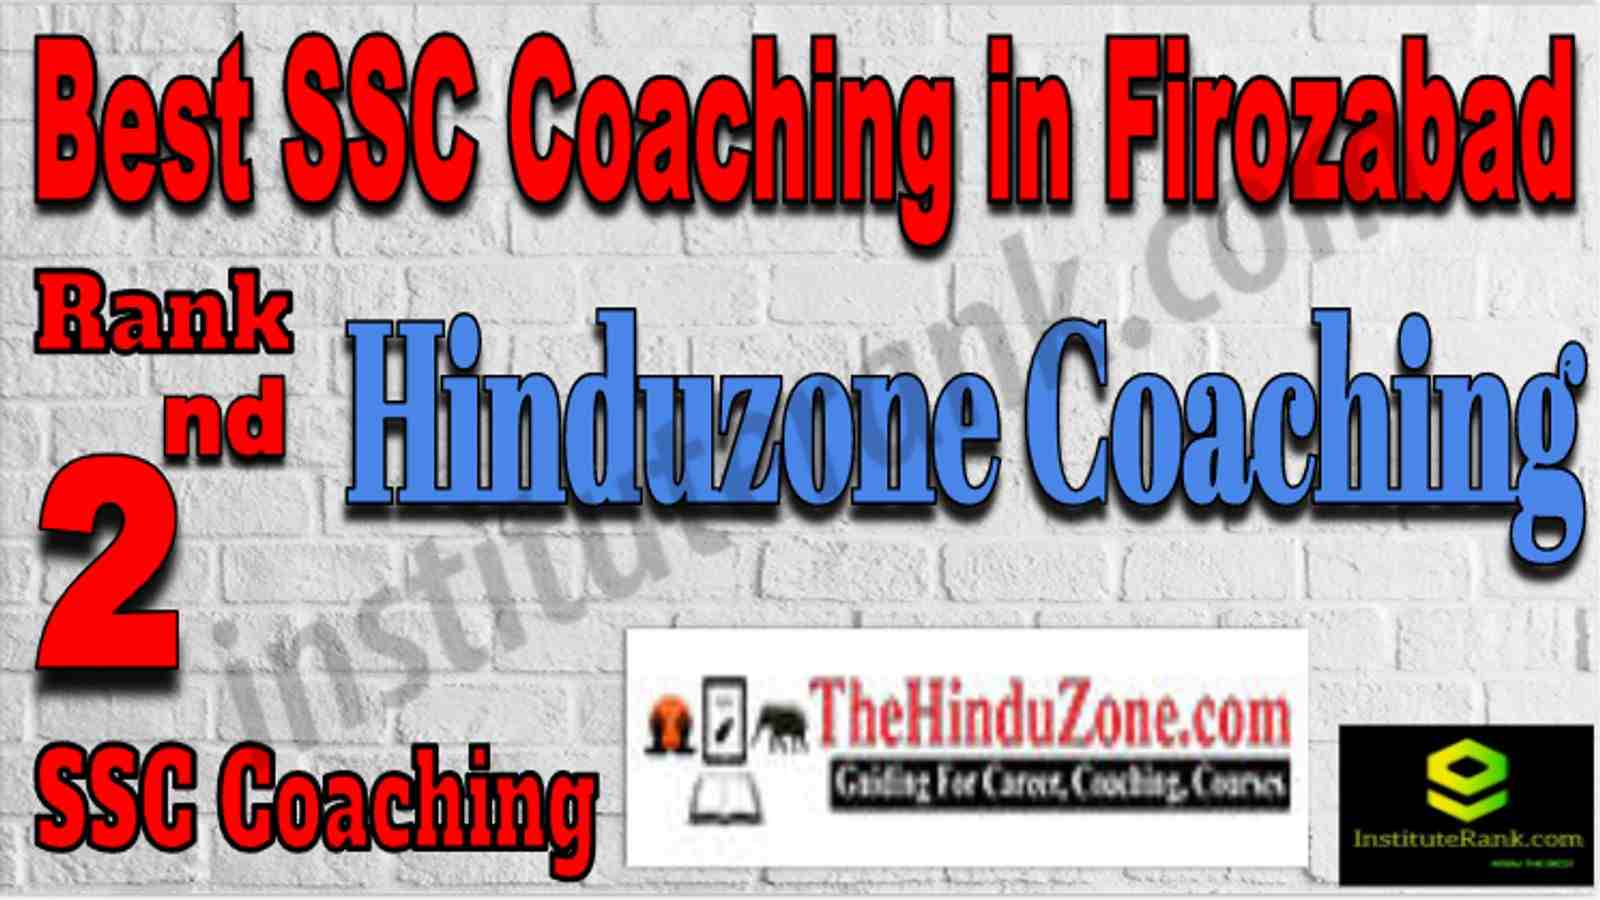 Rank 2 Best SSC Coaching in Firozabad